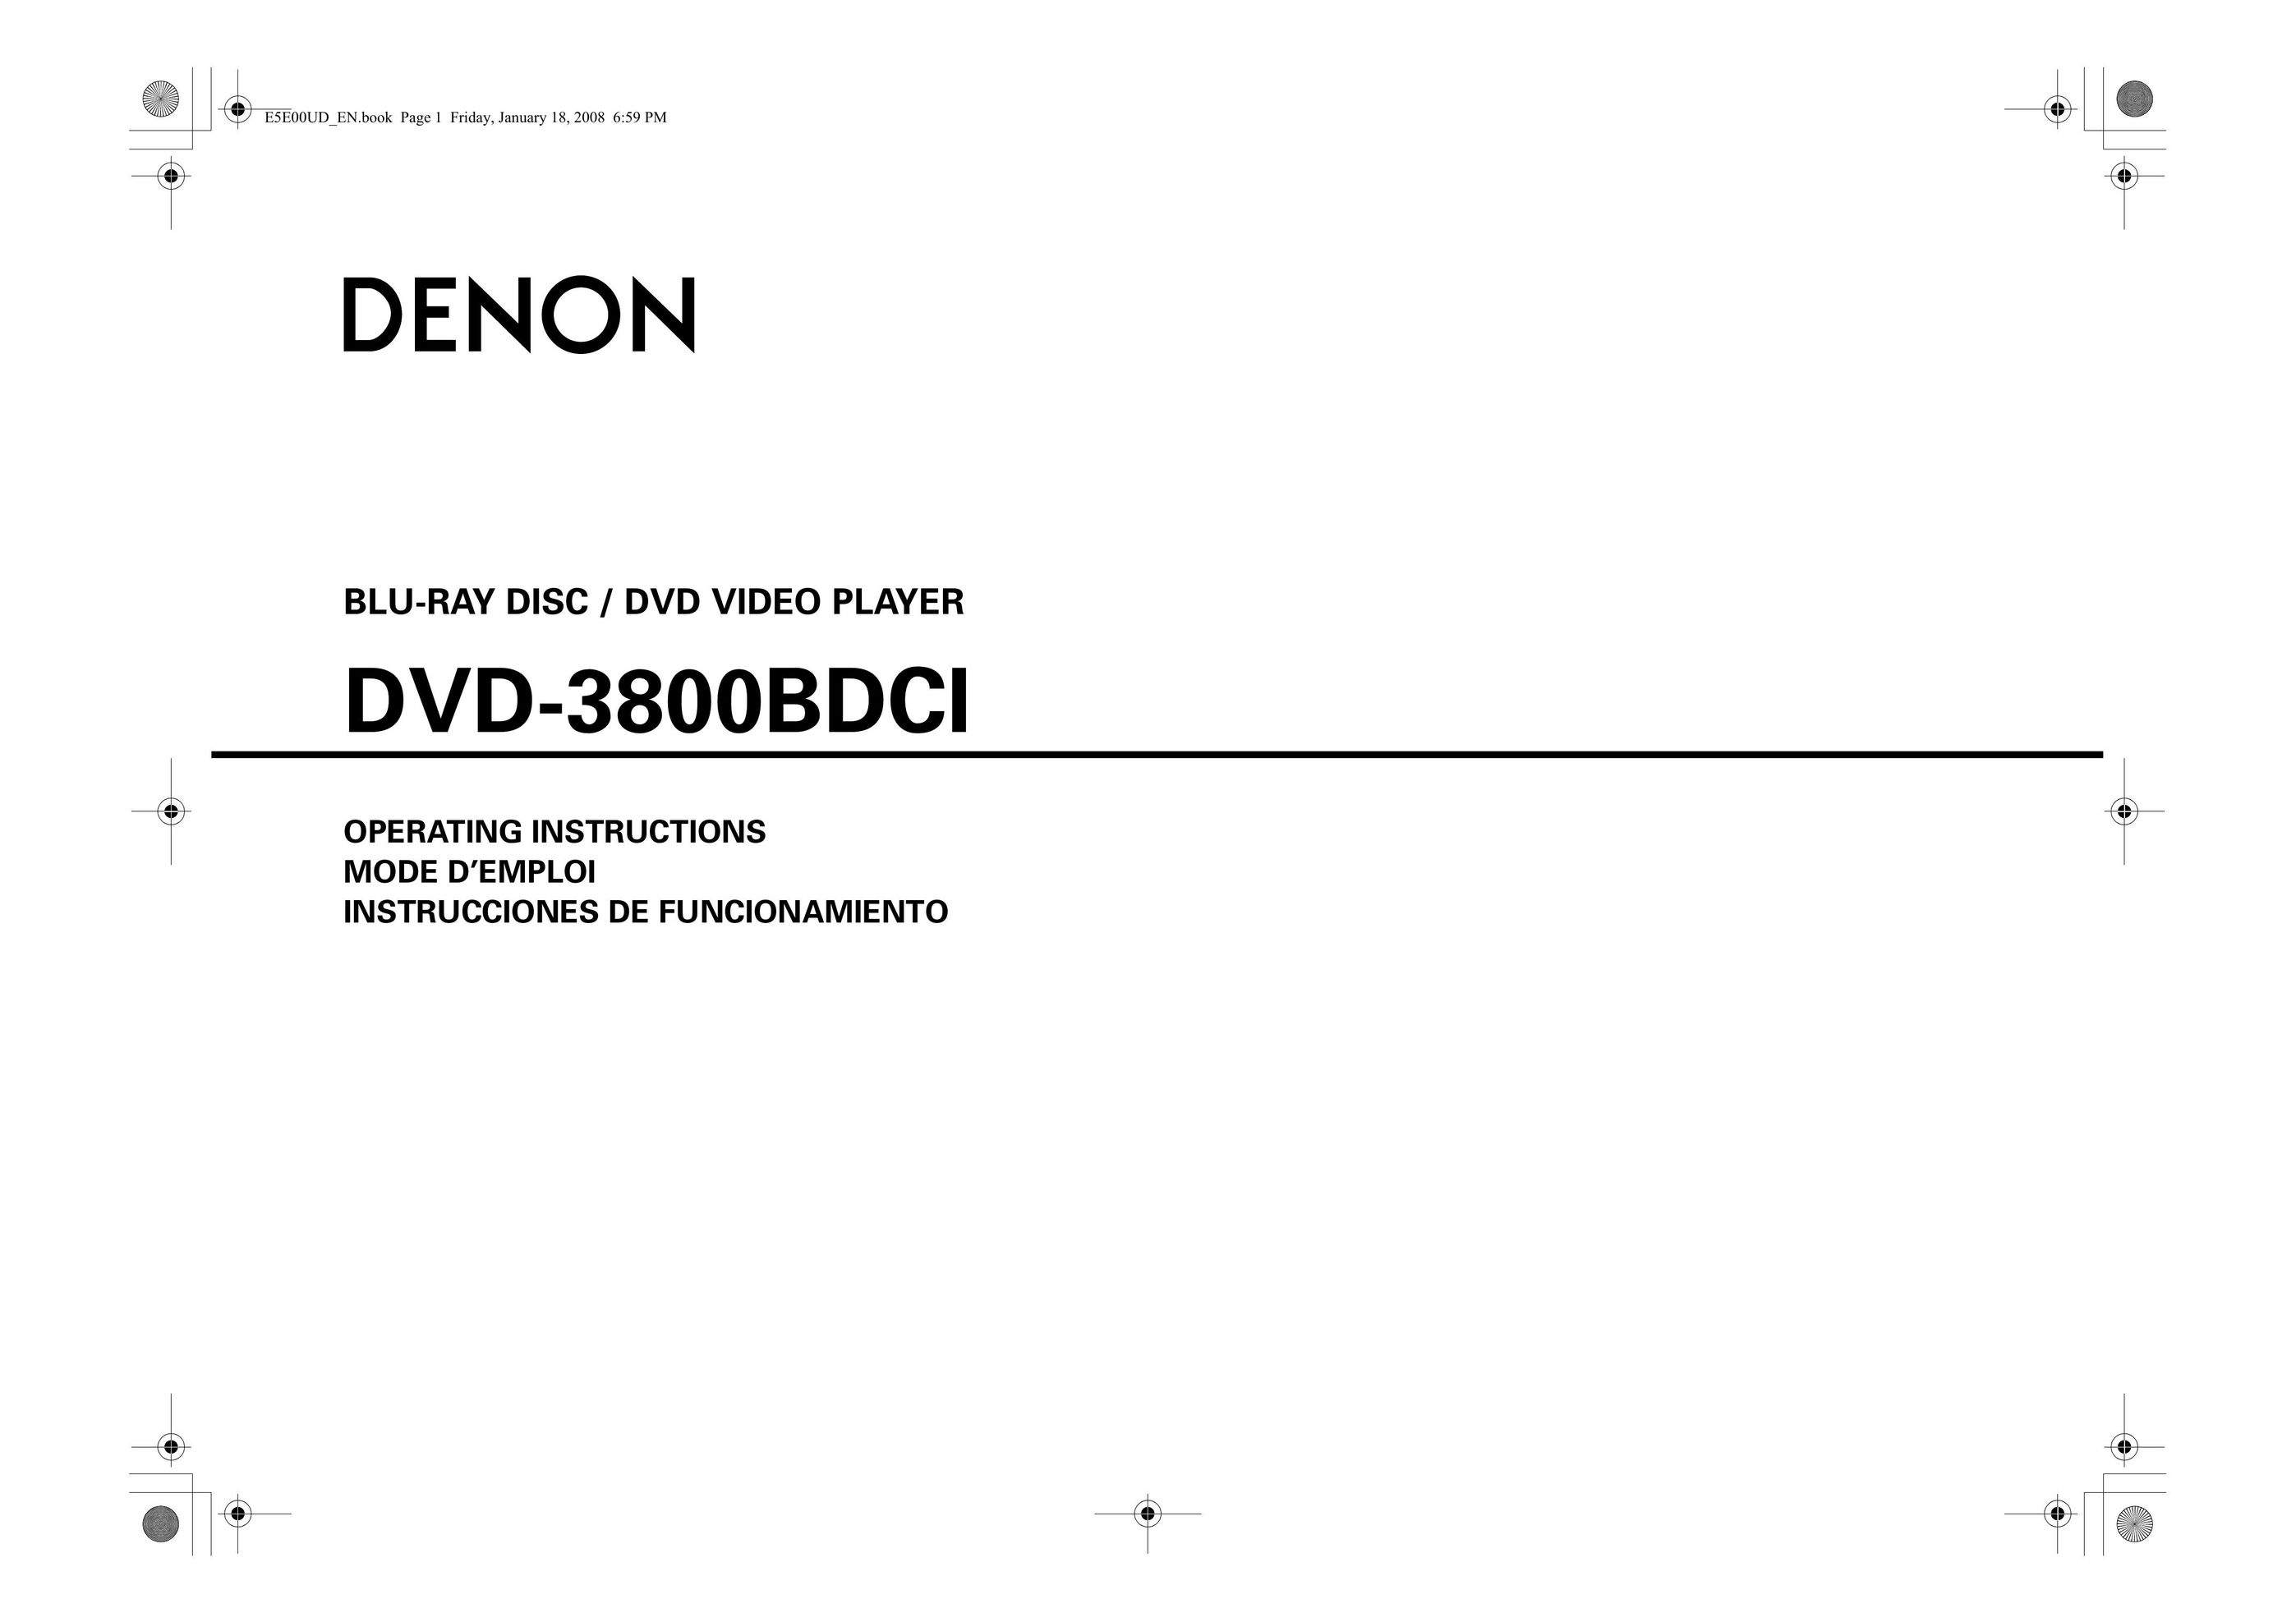 Denon DVD-3800BDCI Blu-ray Player User Manual (Page 1)